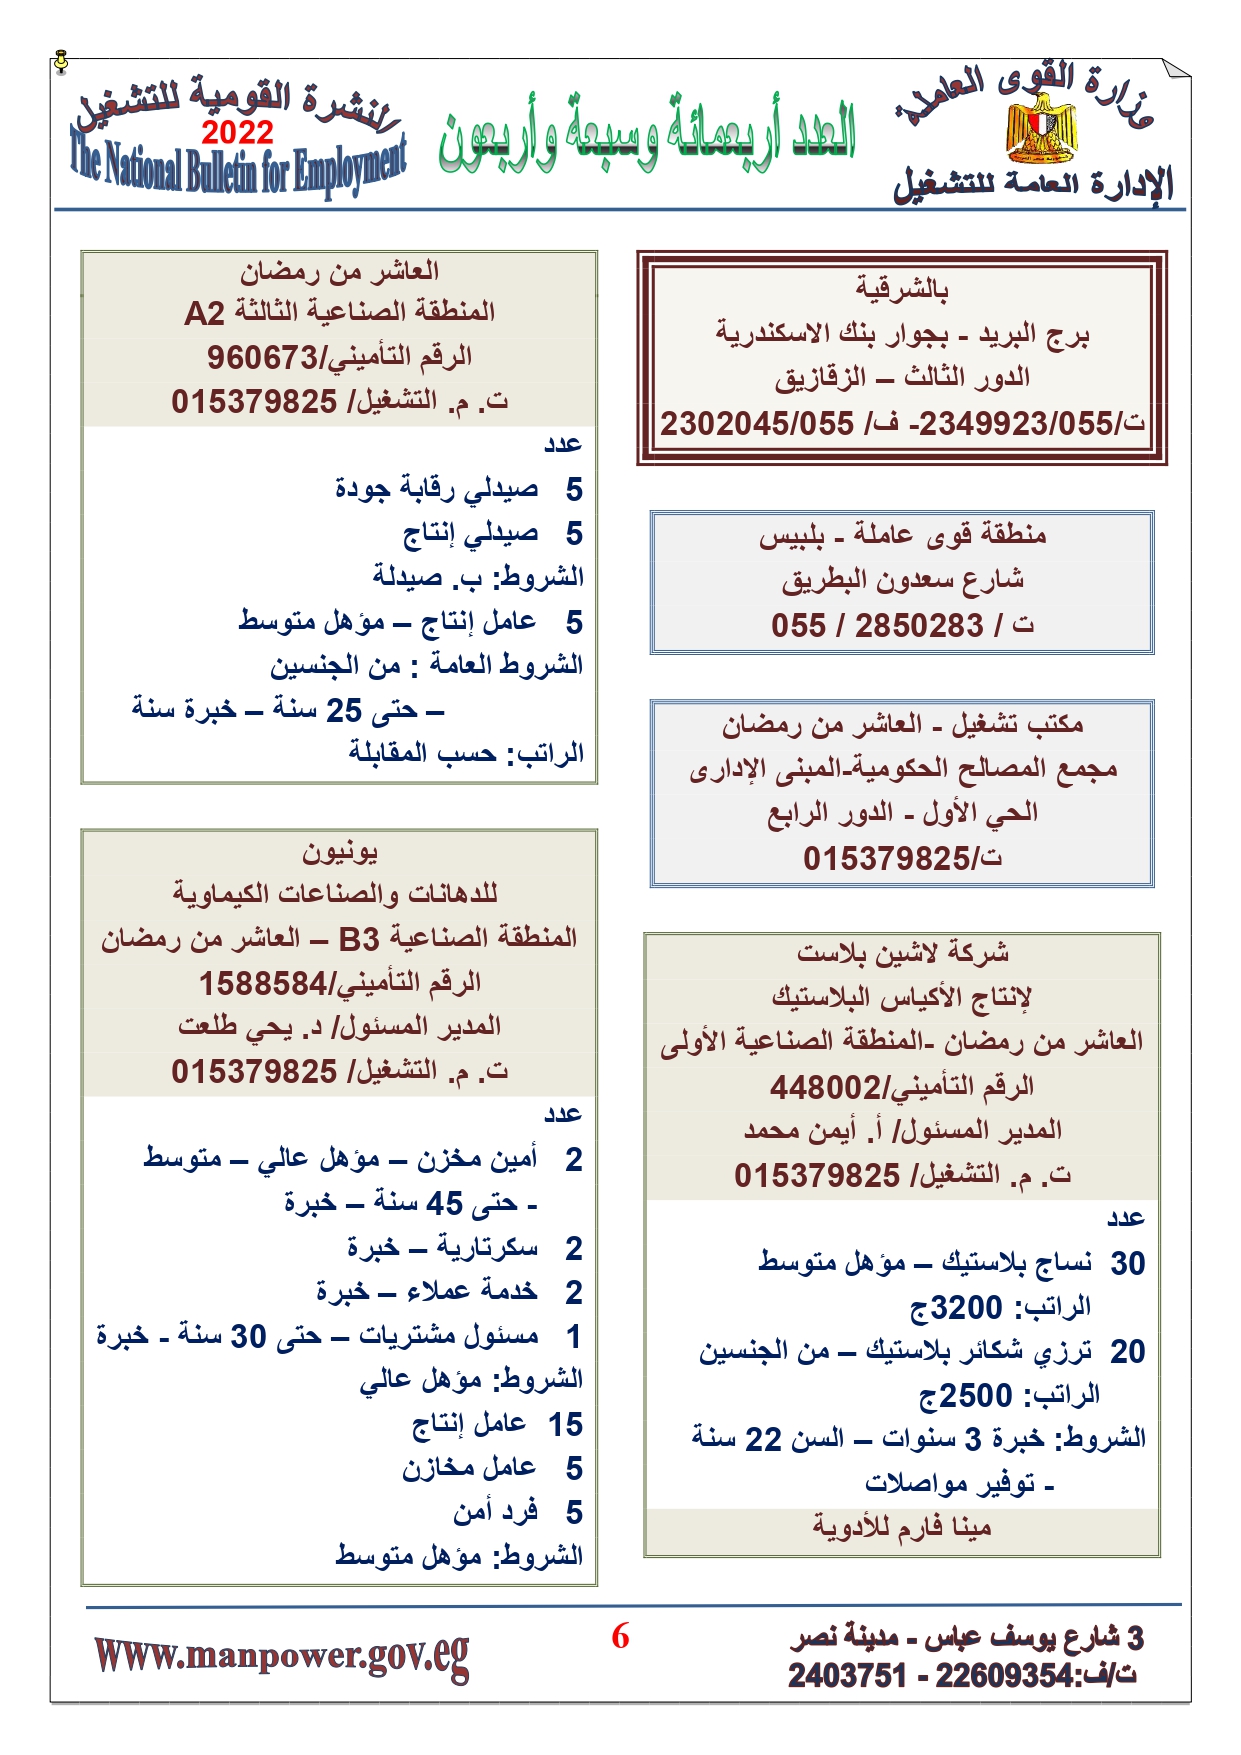 وظائف خالية بمصر وزارة القوي العاملة تعلن عن 2530 وظيفة شاغرة لجميع المؤهلات خلال فبراير ومارس 2022 3